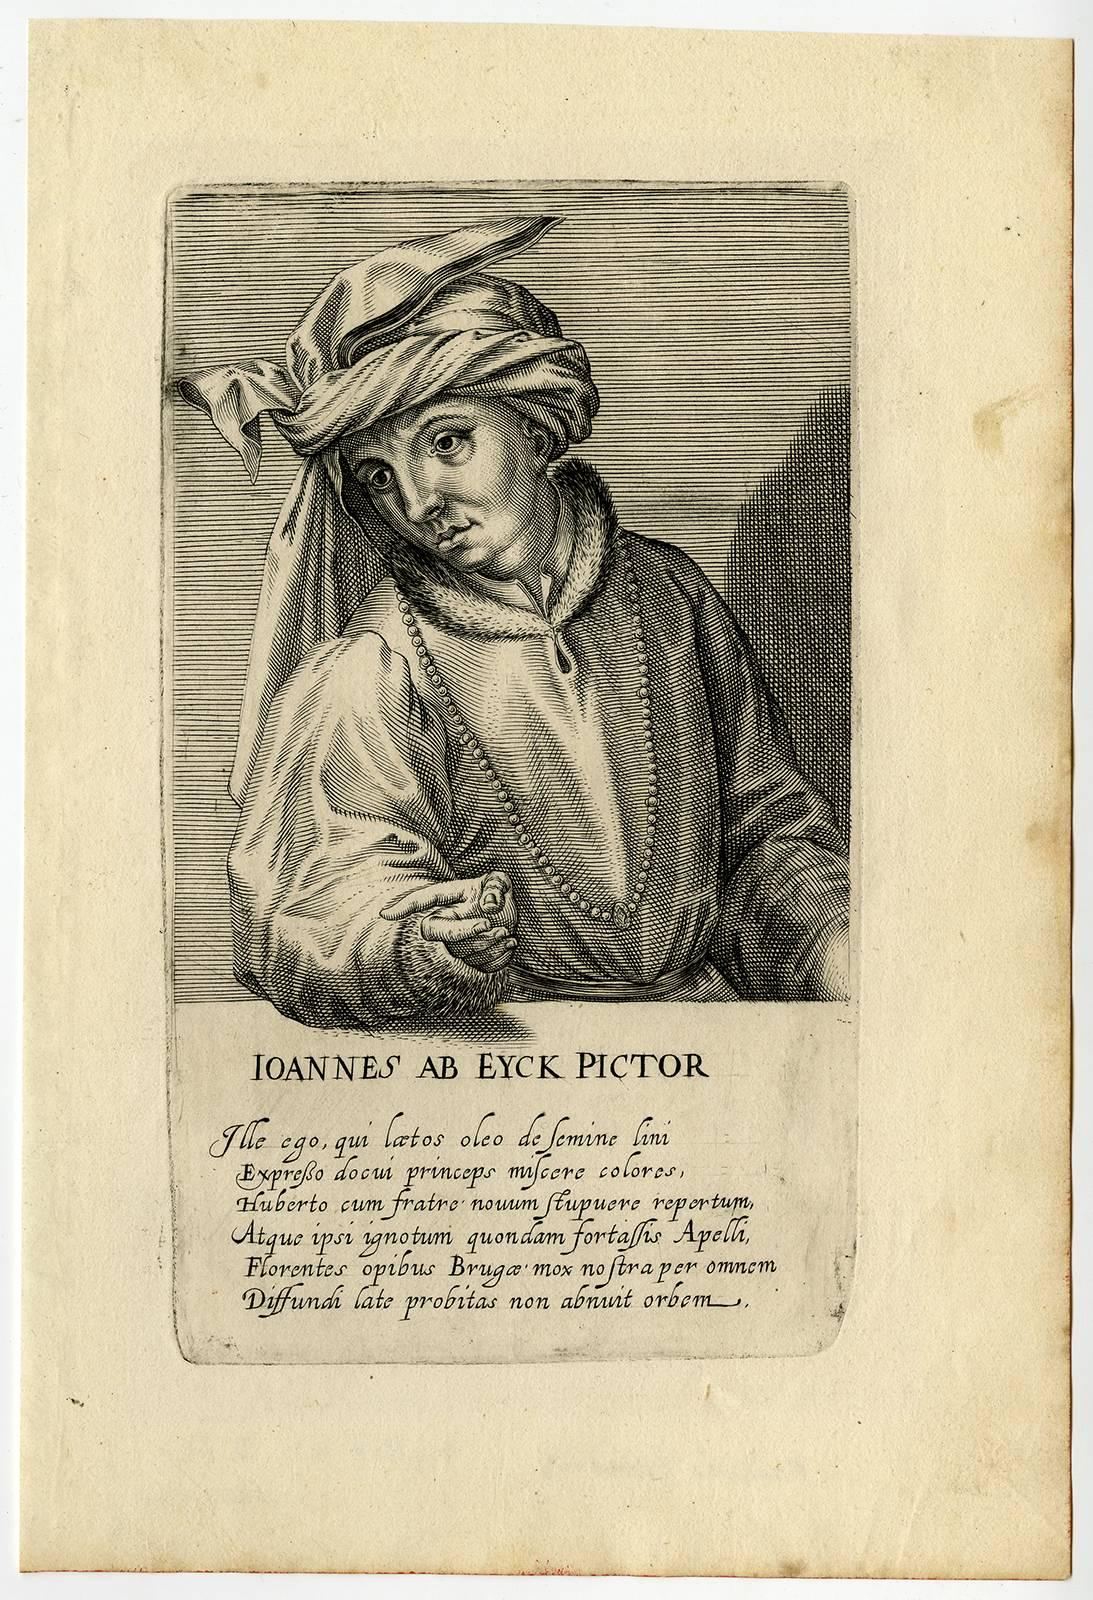 Ioannes ab Eyck pictor - Portrait of the painter Jan van Eyck. - Print by Hendrik Hondius the Elder